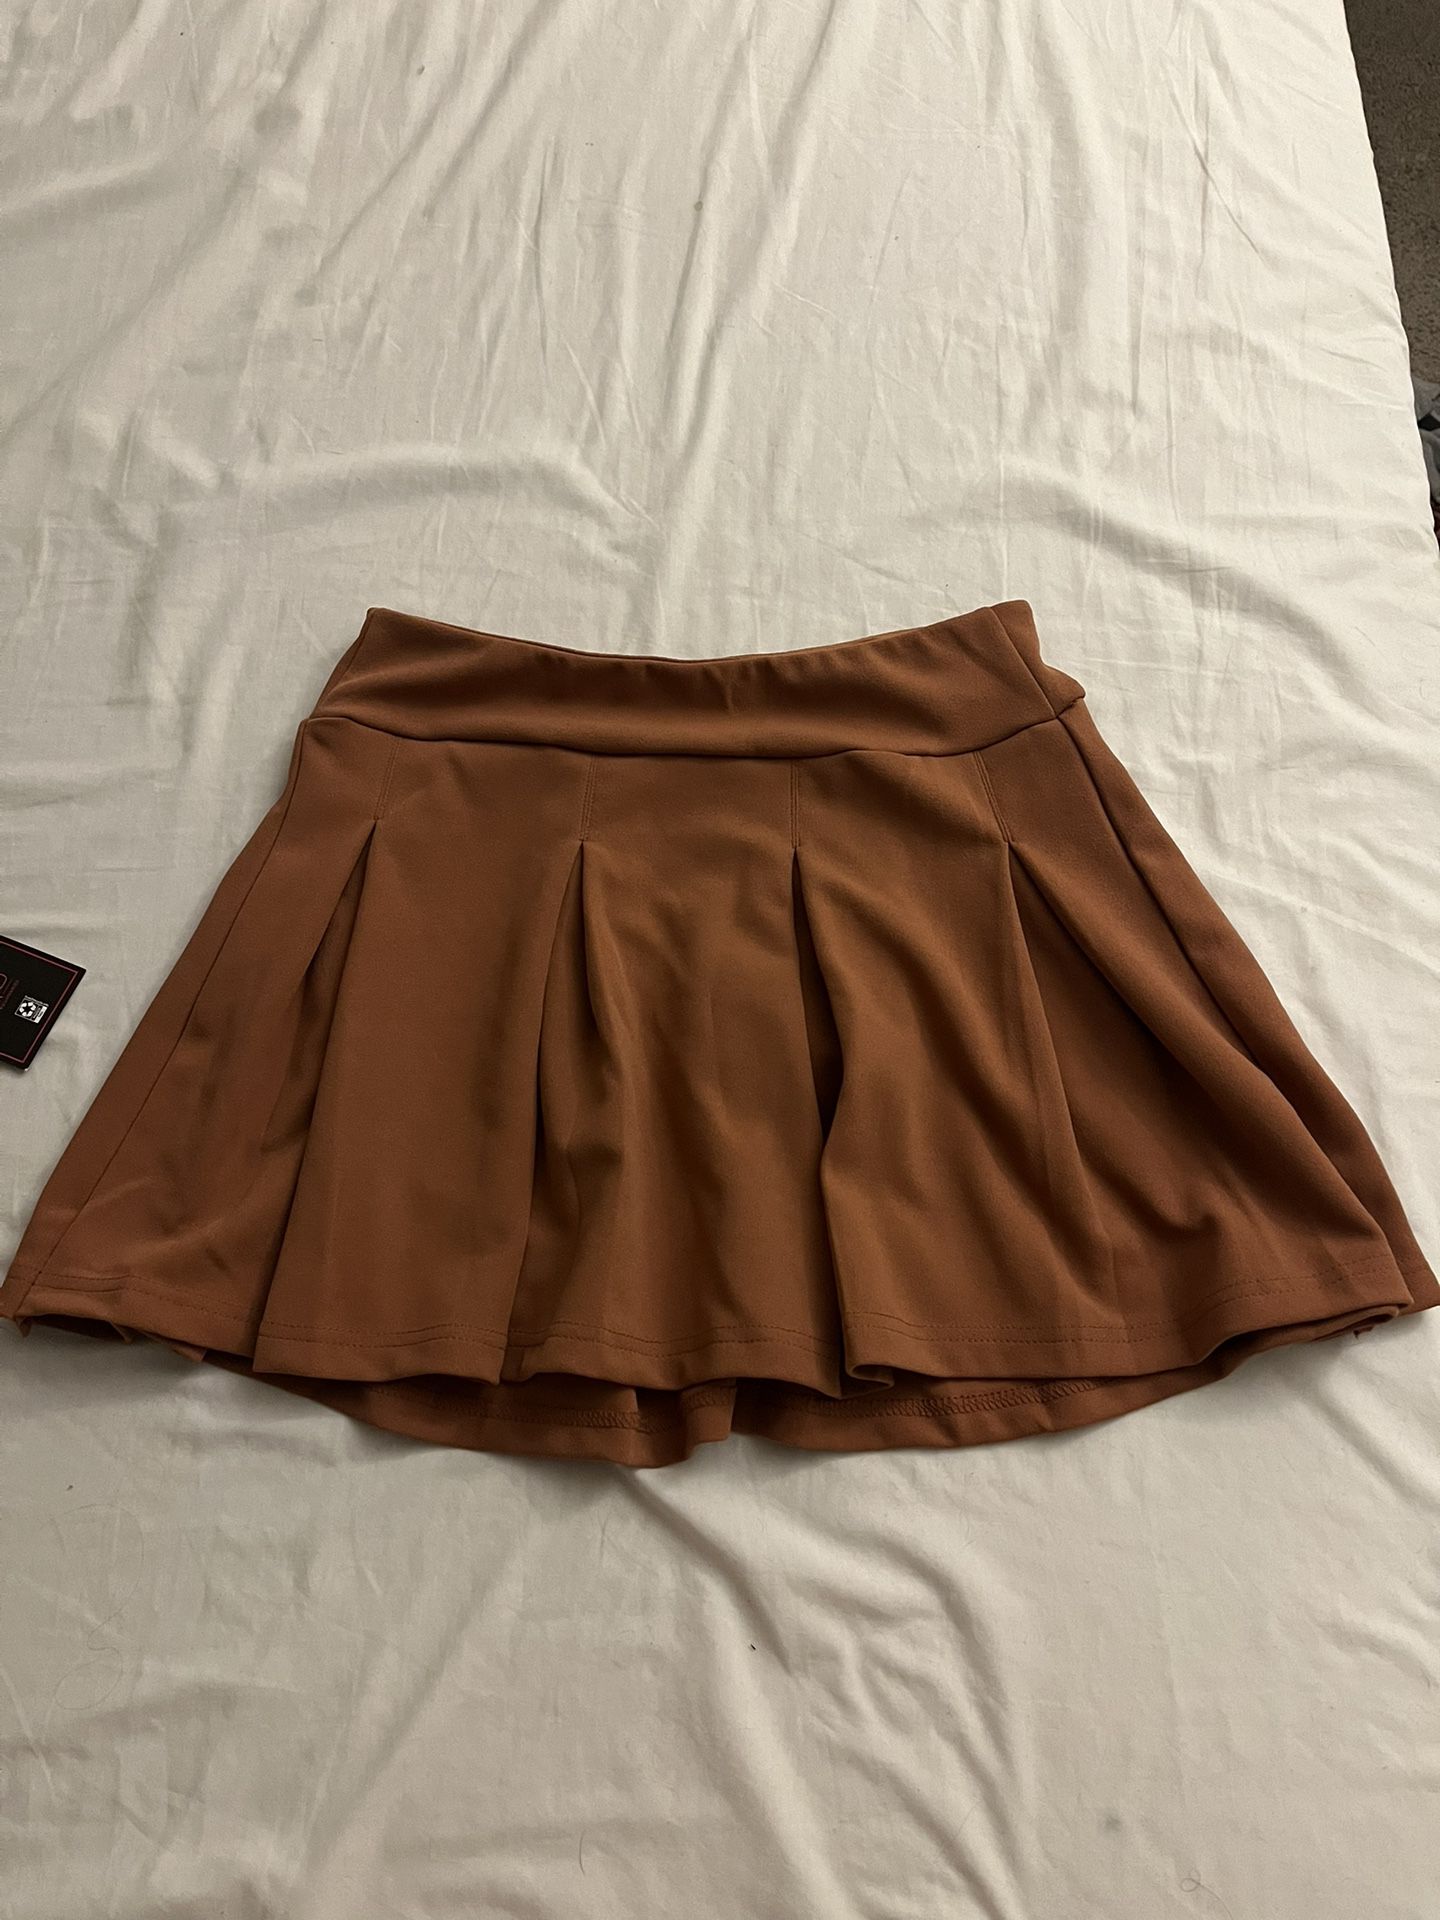 Brown Pleated Tennis Skirt